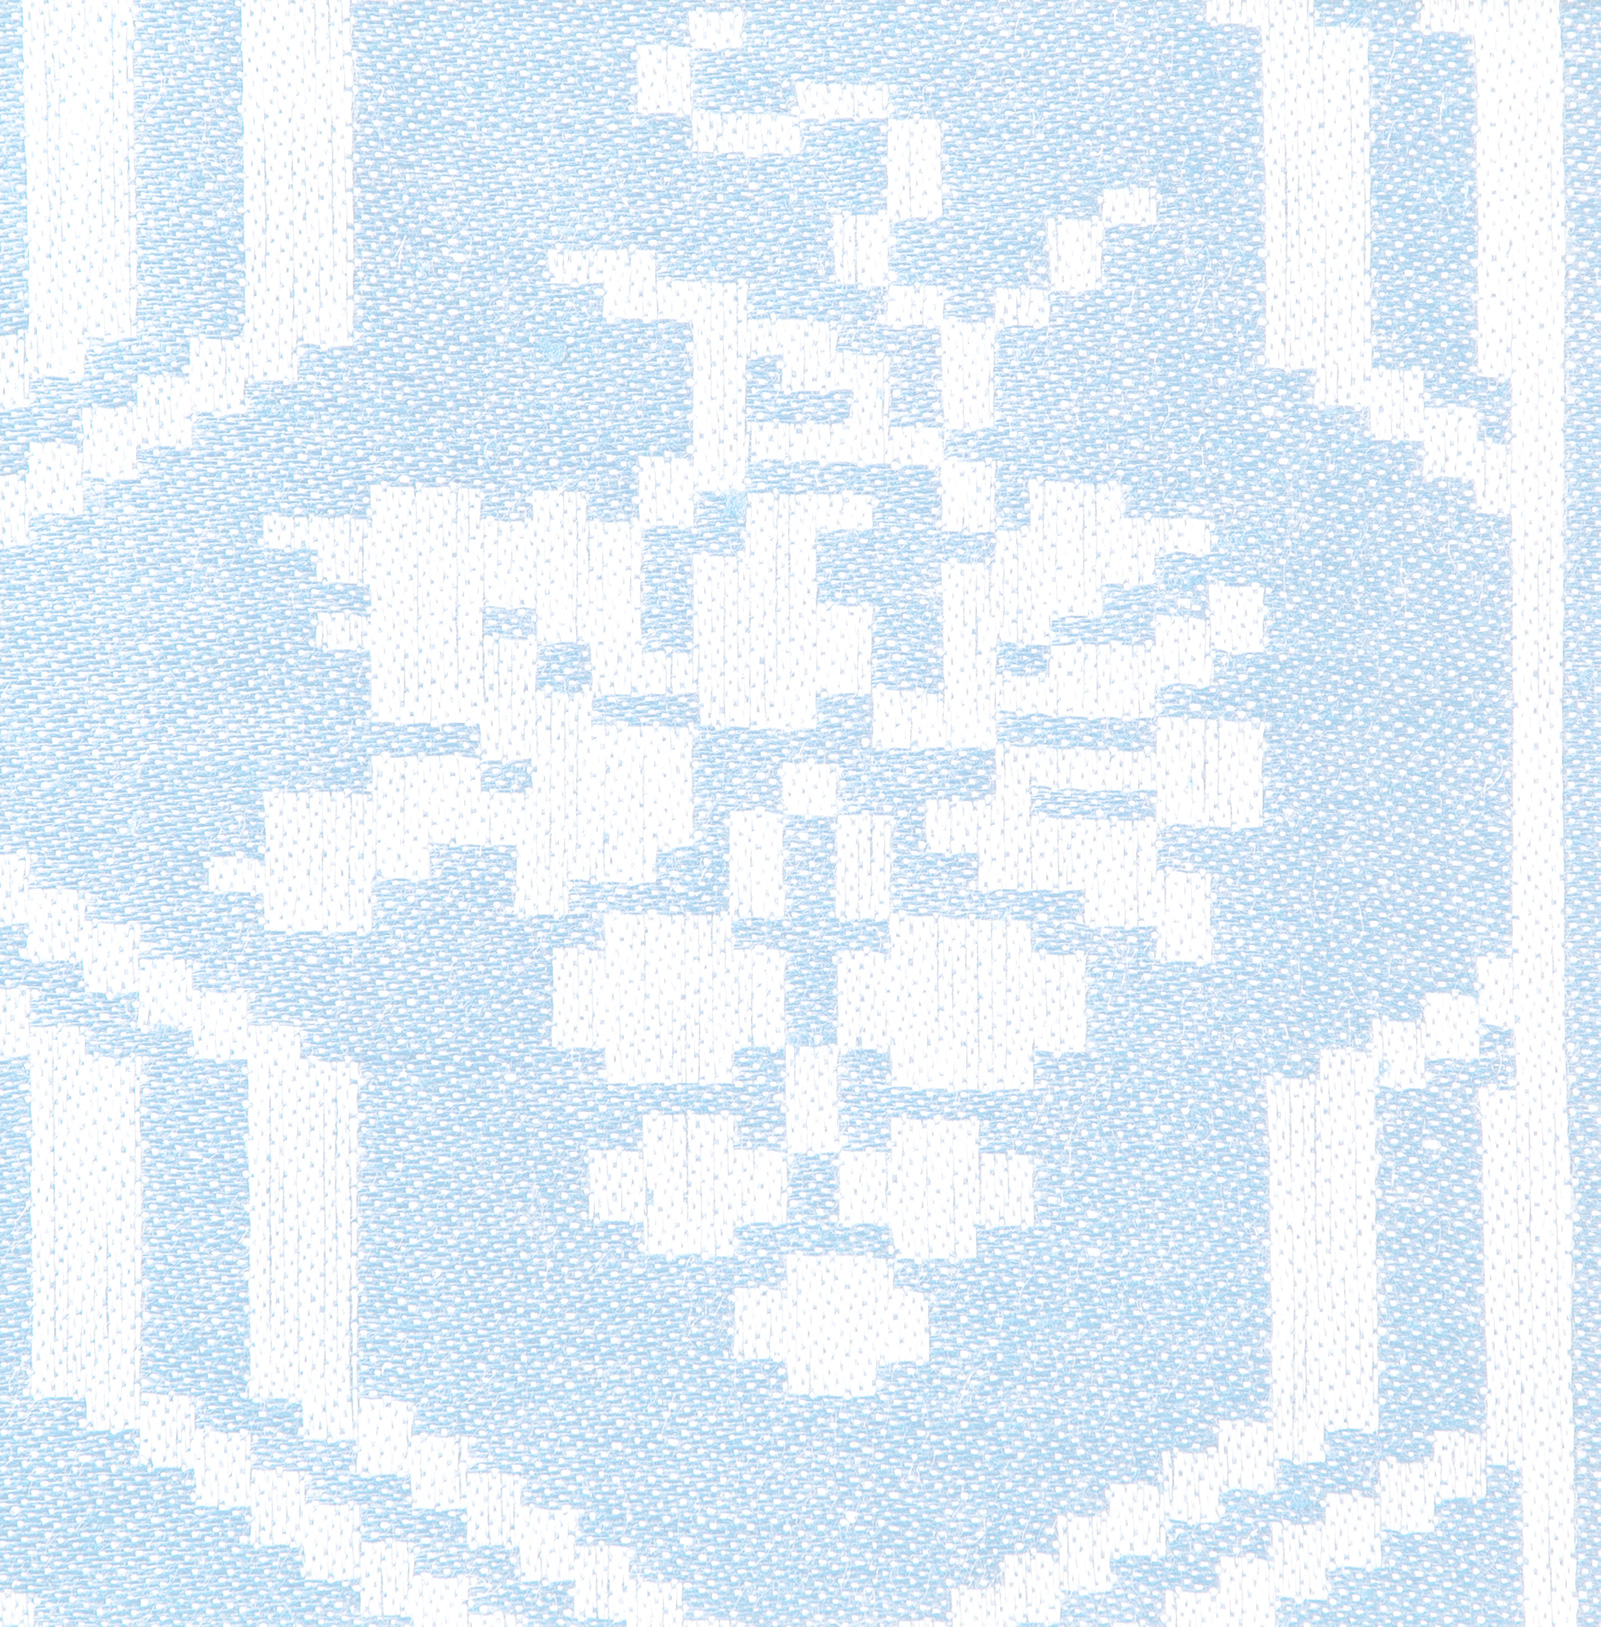 Druvlasen linen tablecloth and napkin holder Klässbols Linneväveri designed by Hjalmar Johansson dark blue